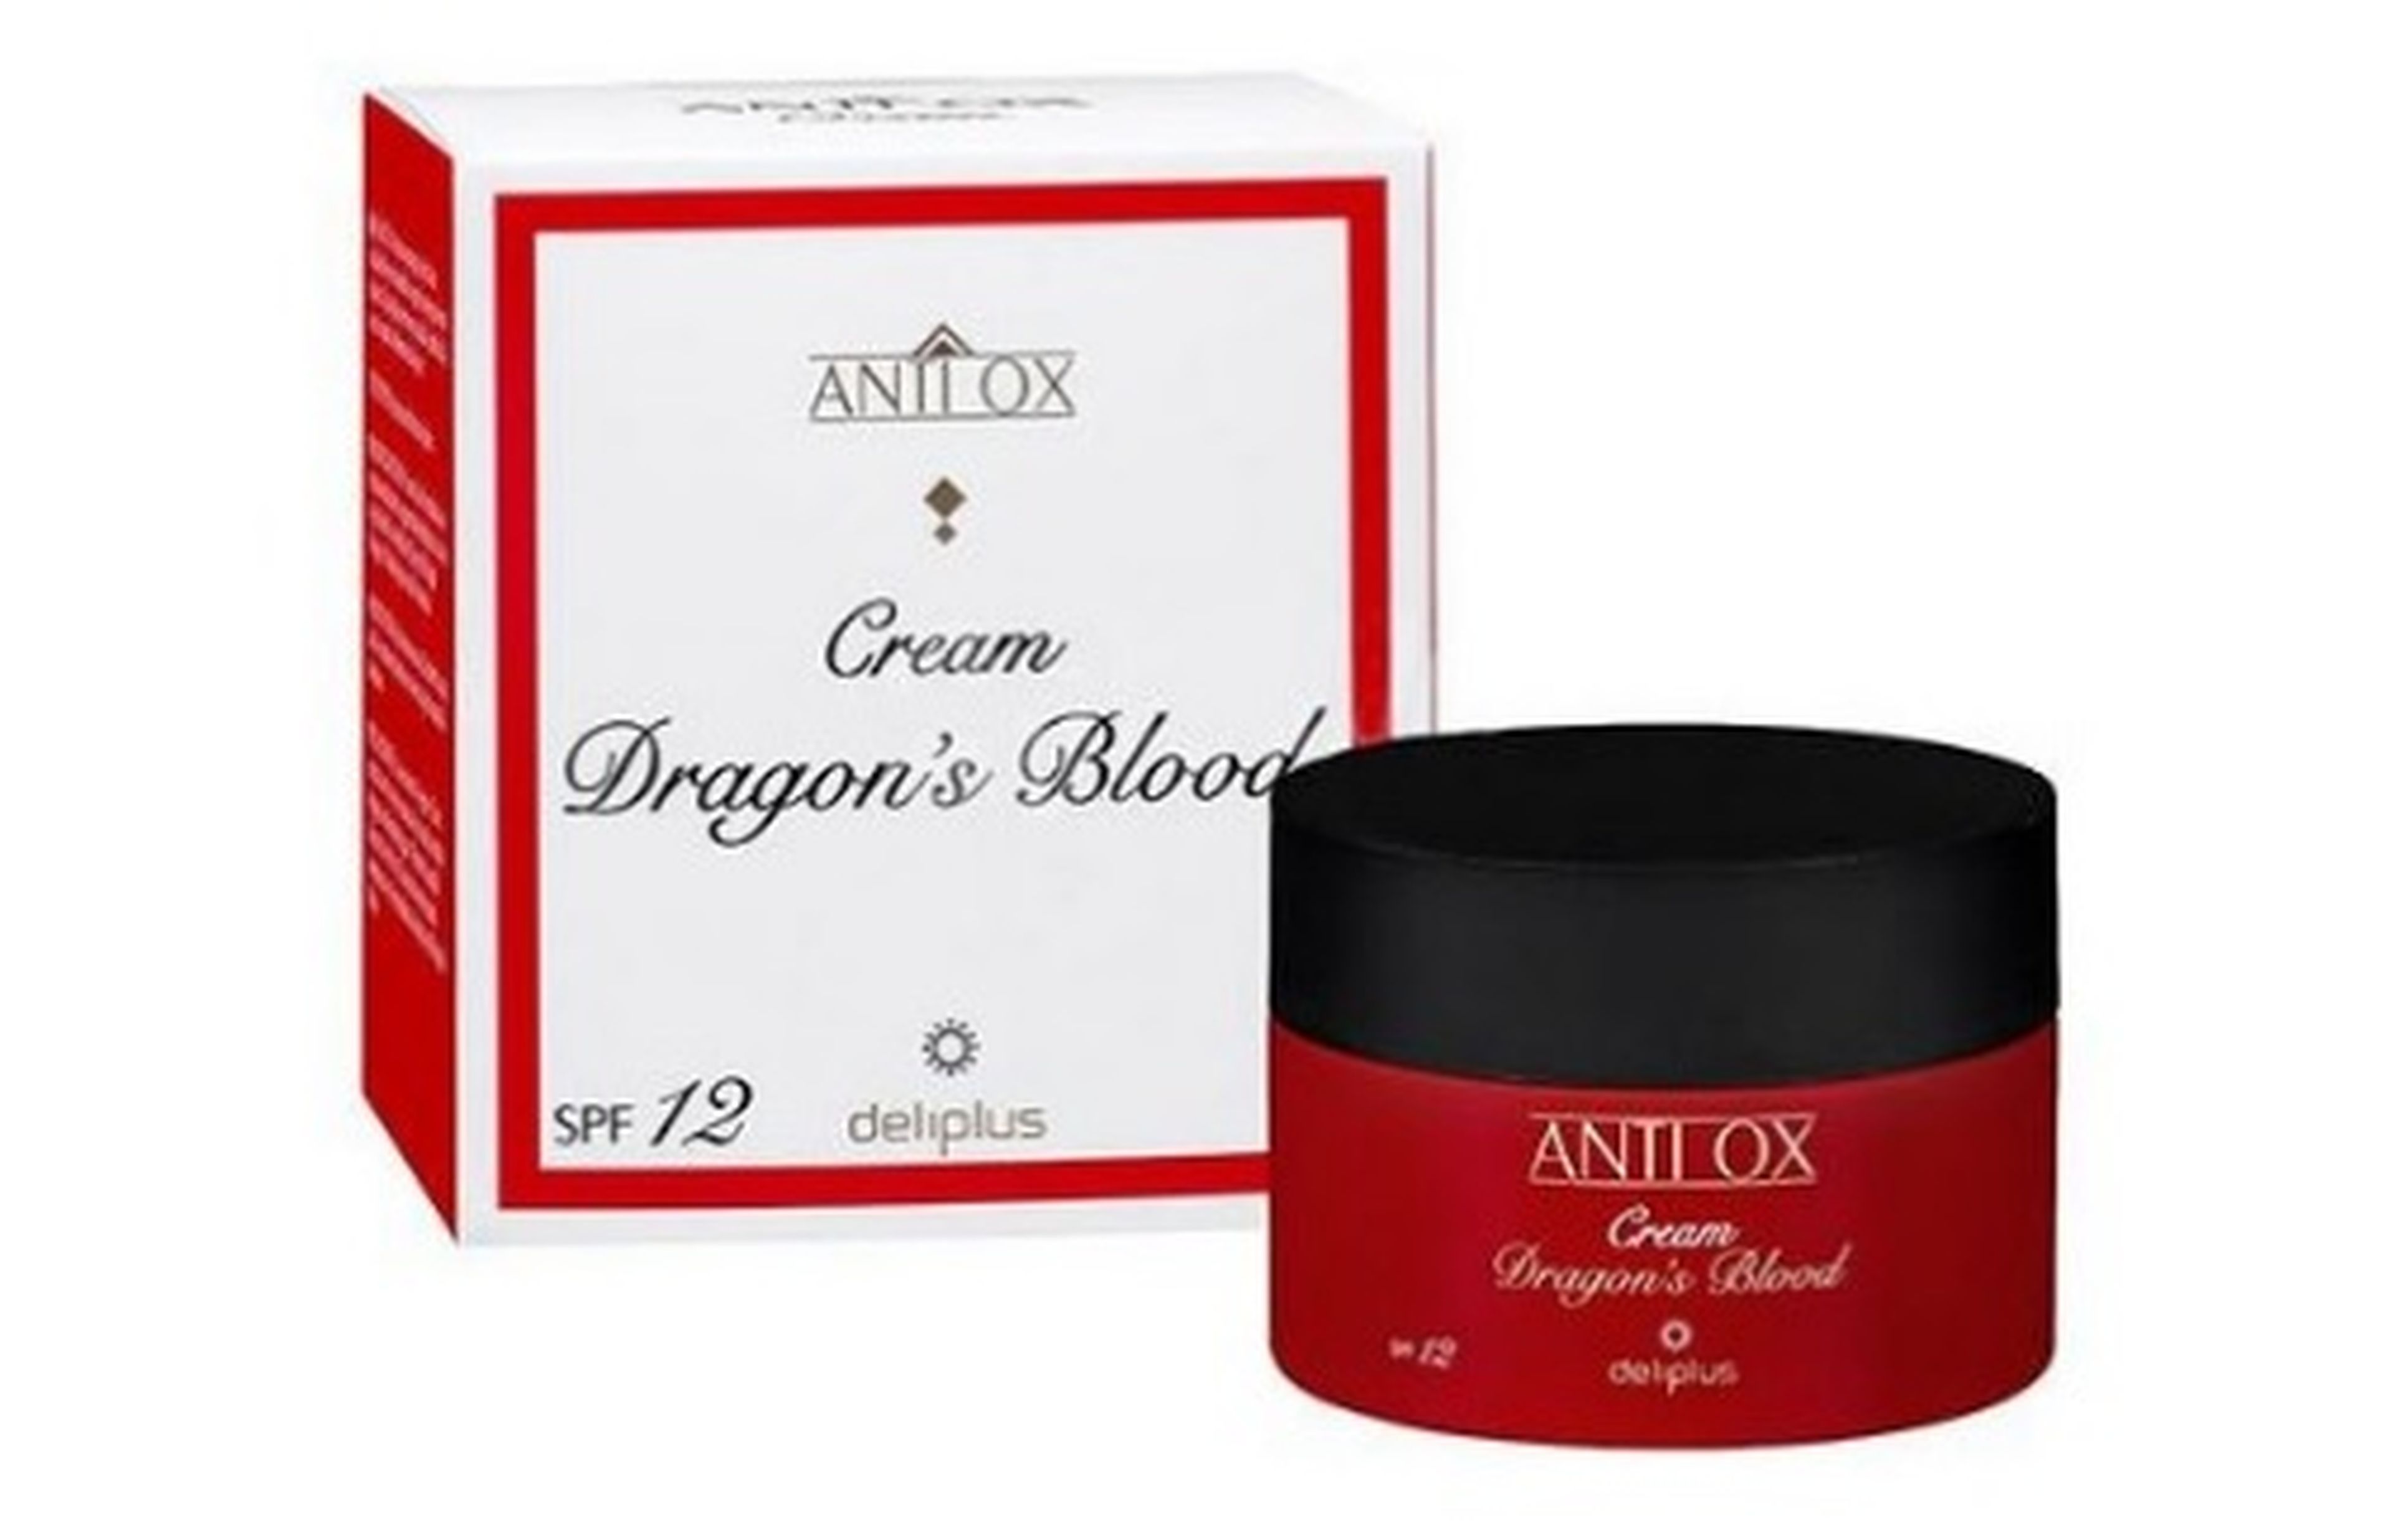 Imagen promocional de la nueva crema antiox de sangre de dragón de Mercadona